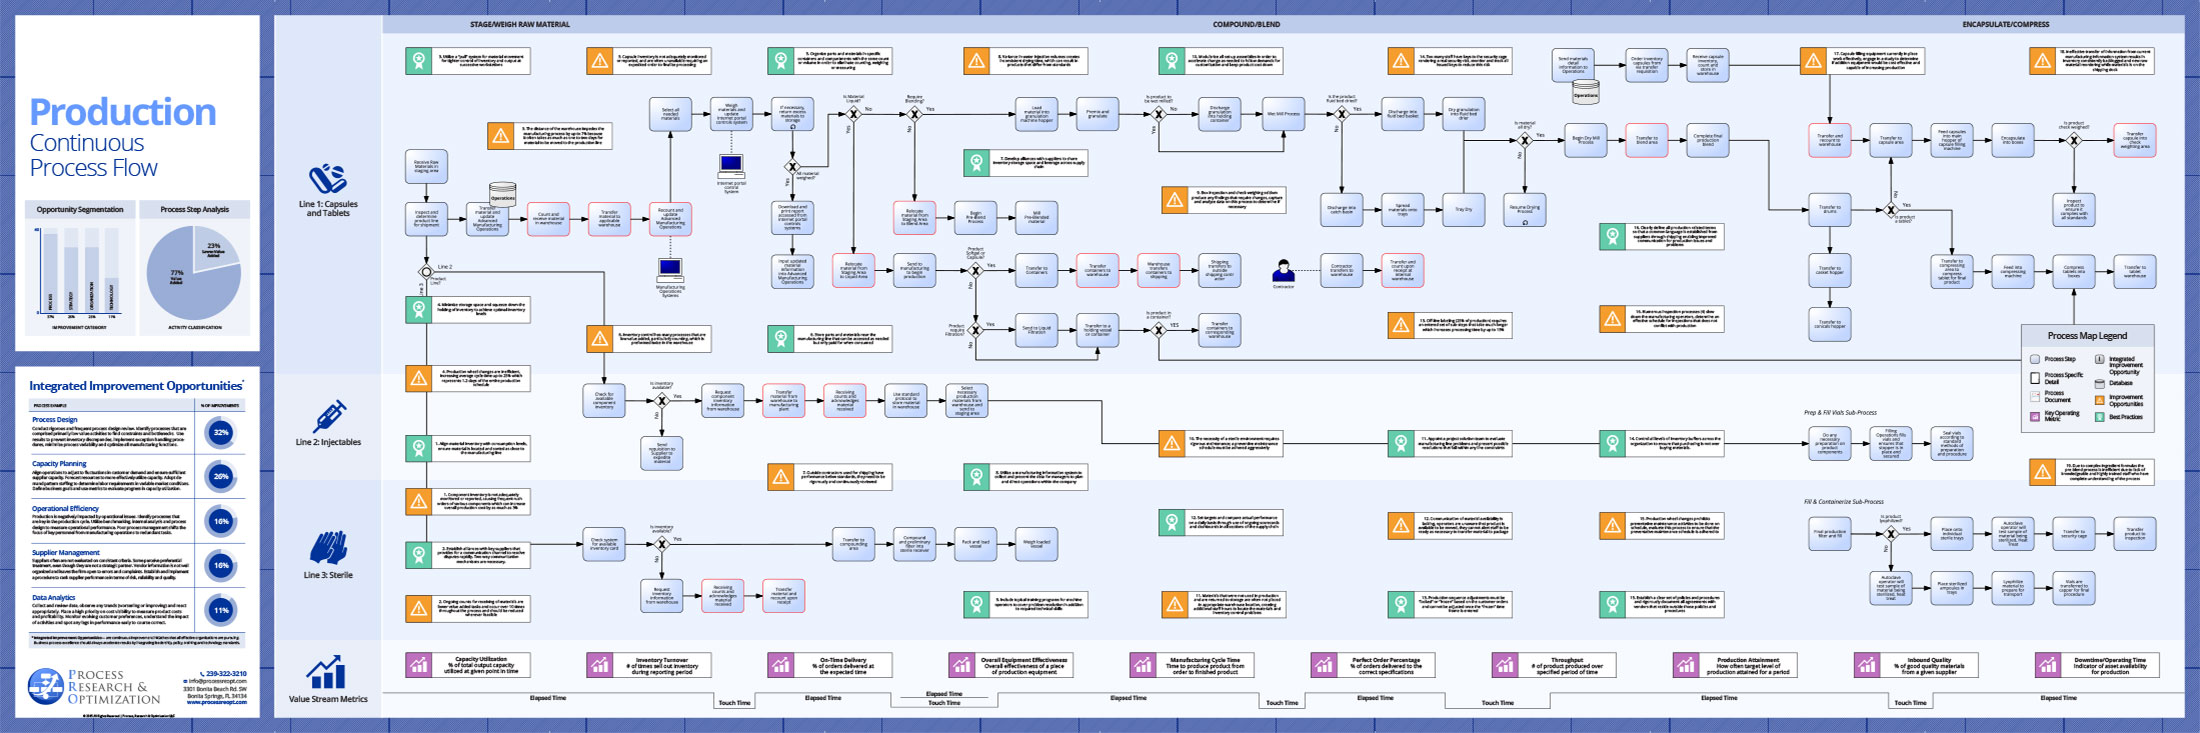 Production - Continuous Process Flow